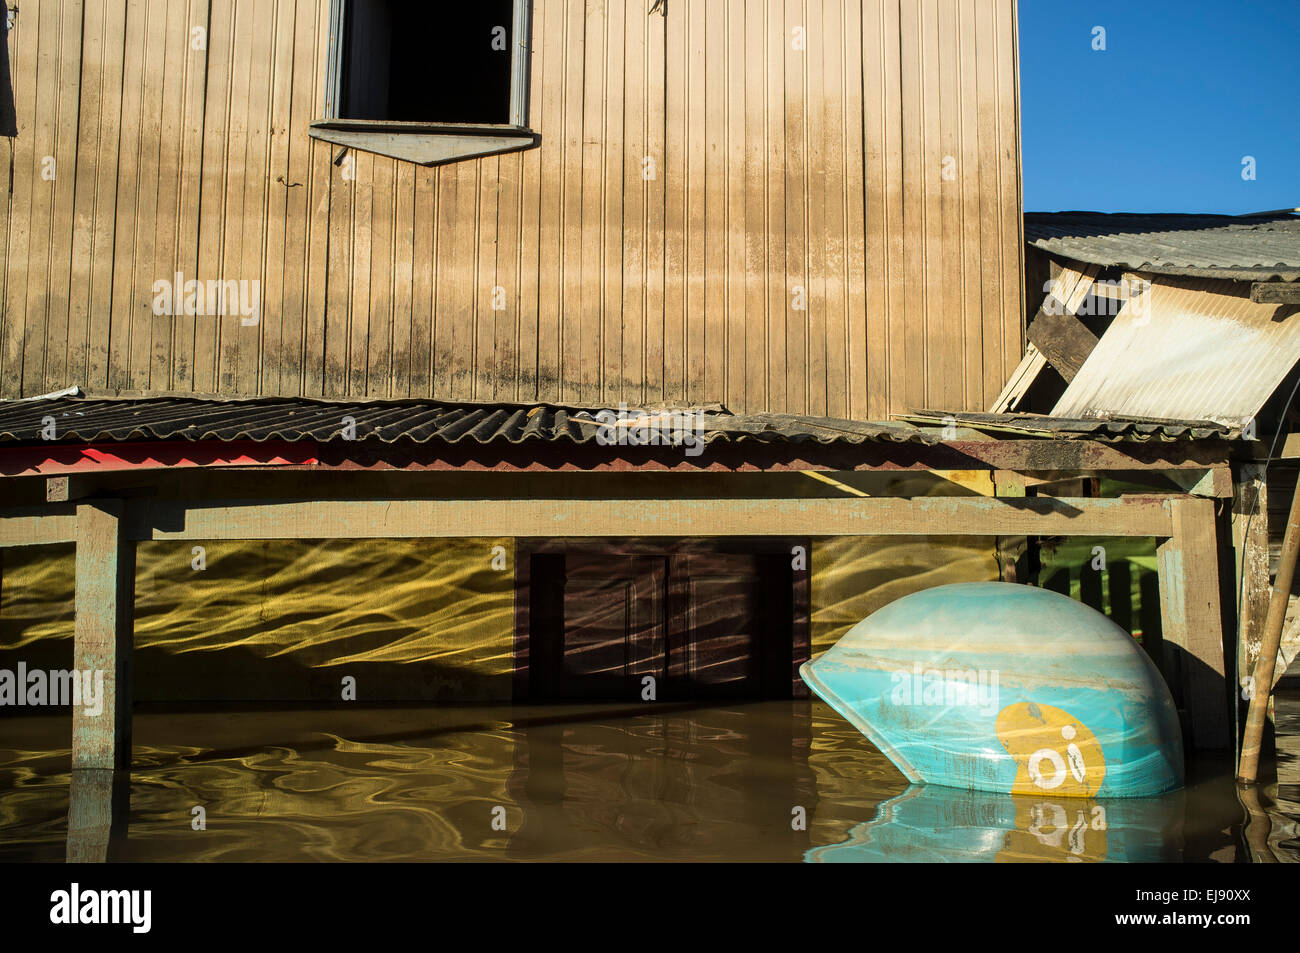 2015 Inondazioni in Amazzonia brasiliana. allagata cabina telefonica e la Casa a Novo Triangulo distretto, Rio Branco città, Acre. Le inondazioni sono state che colpisce migliaia di persone in stato di Acre, nel nord del Brasile, dal 23 febbraio 2015, quando alcuni dei suoi fiumi, in particolare il fiume acri, in overflow. Ulteriori pioggia pesante ha costretto i livelli del fiume ancora maggiore, e il 03 marzo 2015 Brasile del governo federale ha dichiarato lo stato di emergenza in stato di acri, dove alluvioni corrente situazione è stata descritta come la peggiore in 132 anni. Foto Stock